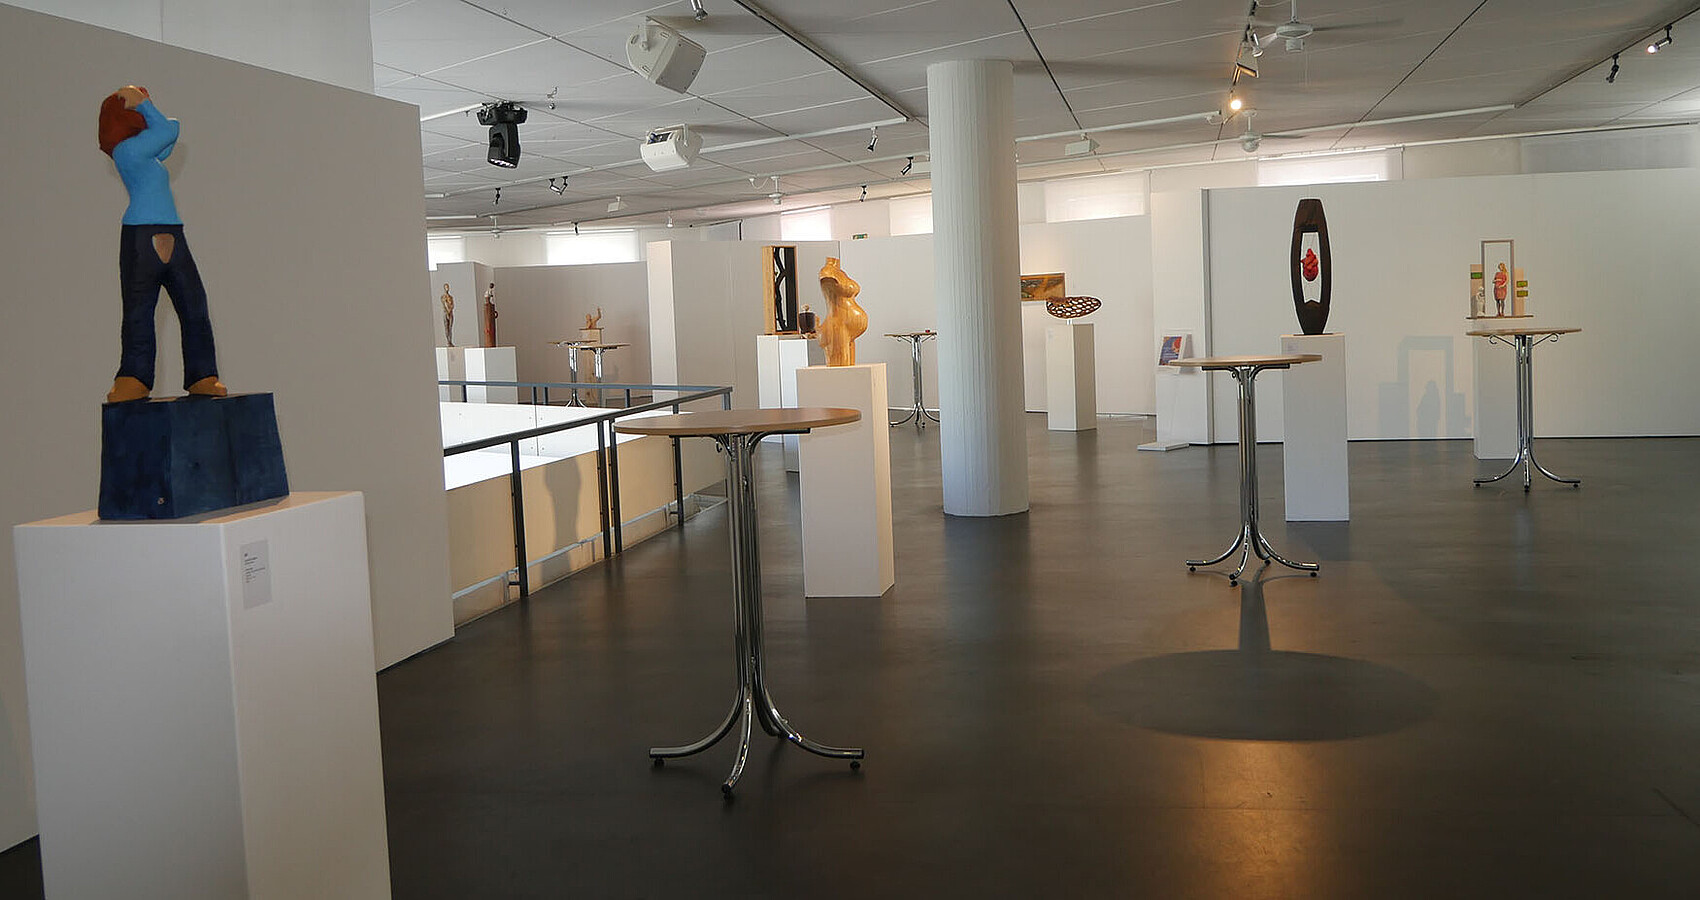 Das Bild zeigt einen Ausstellungsraum, in dem verschiedene Figuren und Skulpturen auf weißen Podesten stehen.